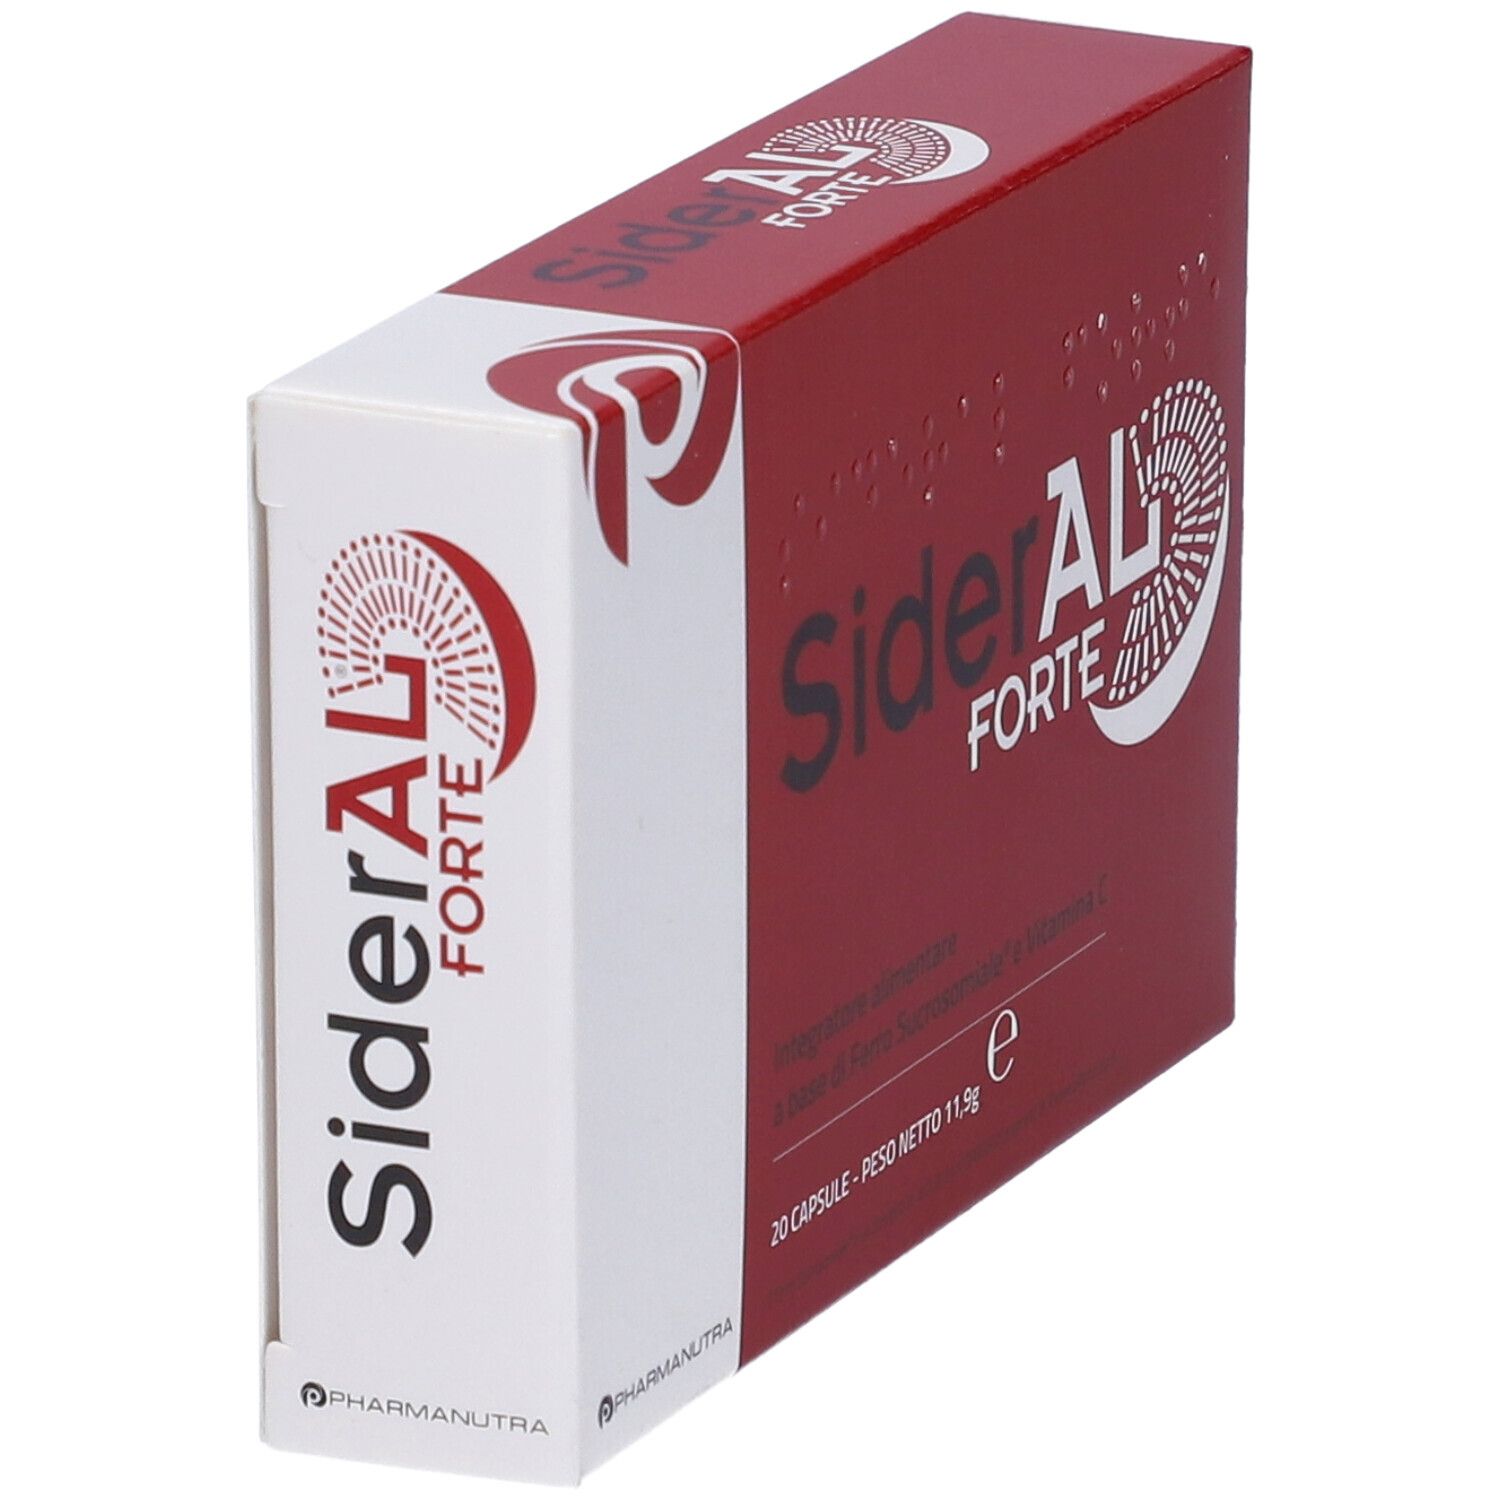 SiderAL® Forte 20 capsule è l'integratore alimentare più venduto in Italia